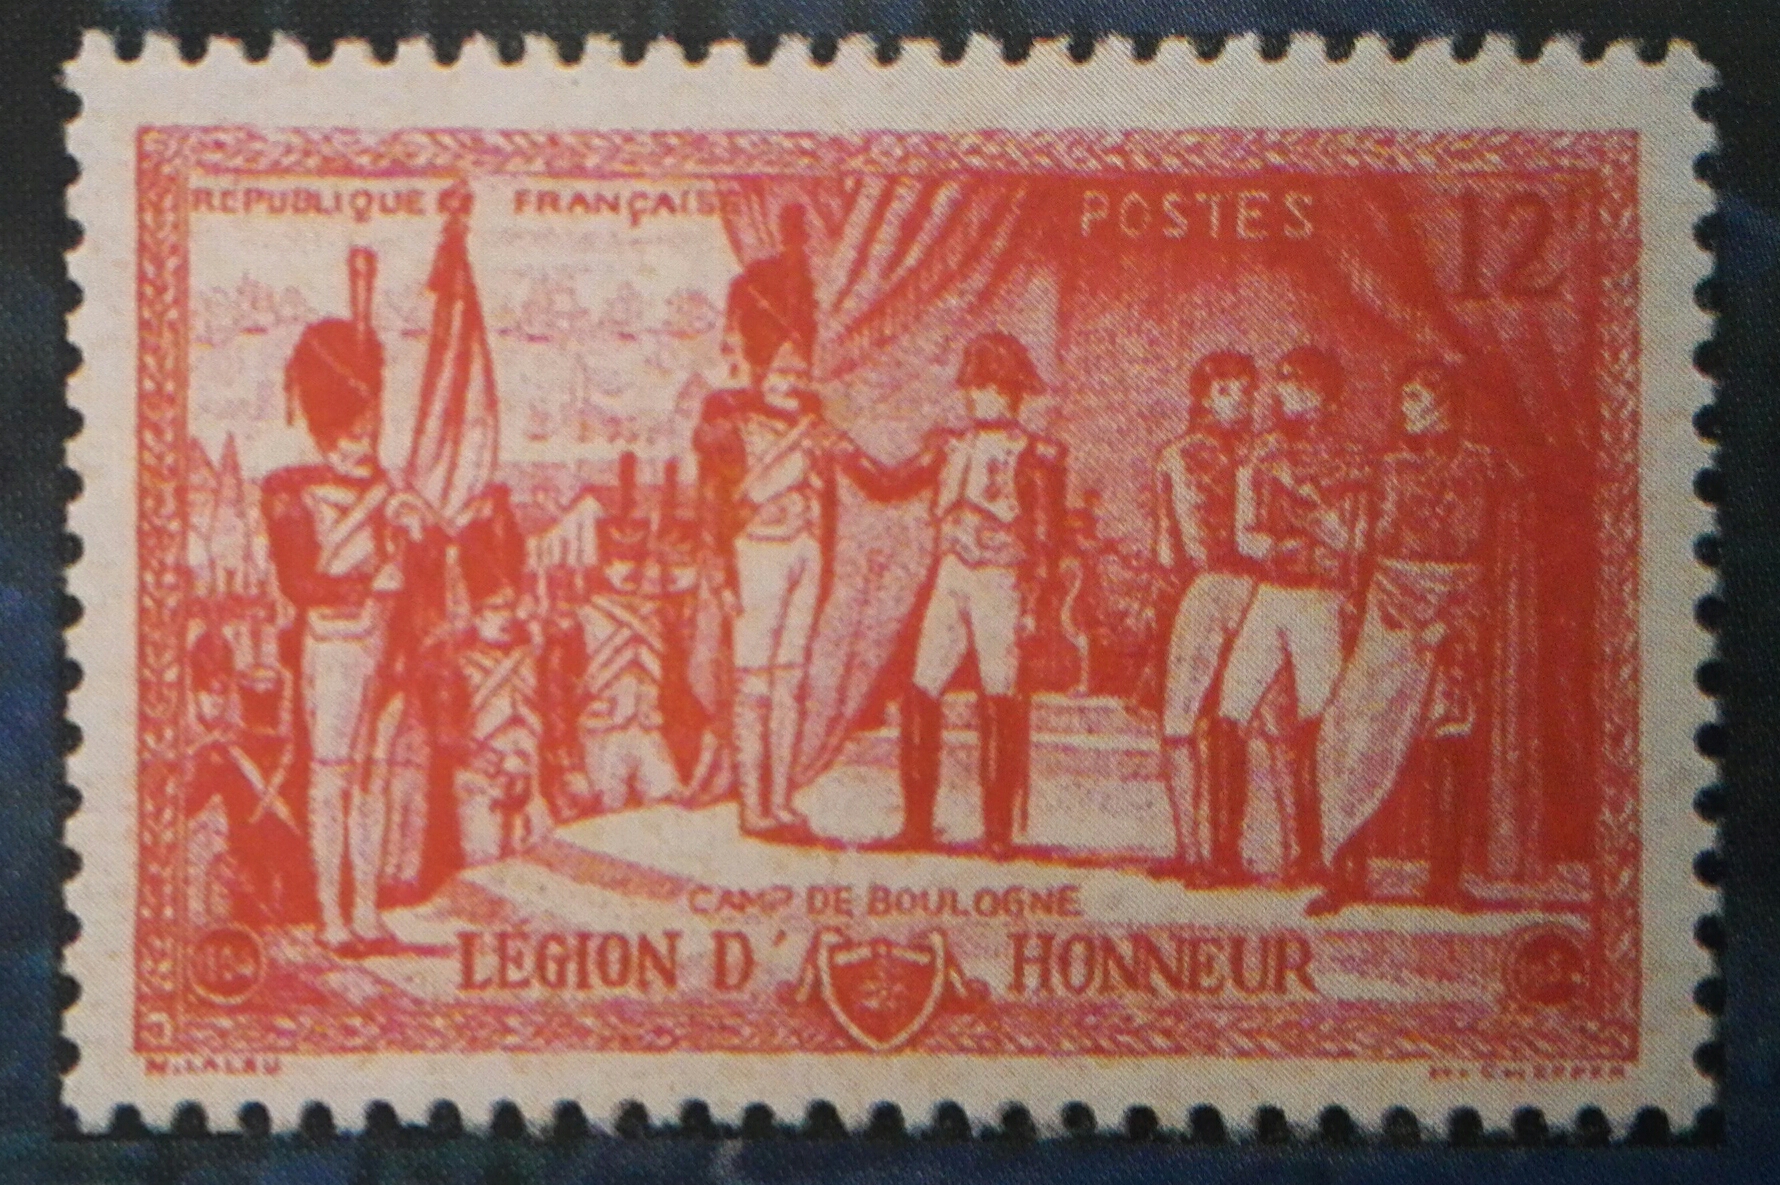 拿破崙在勃艮第軍營向將士授勳（法國1952年郵票）